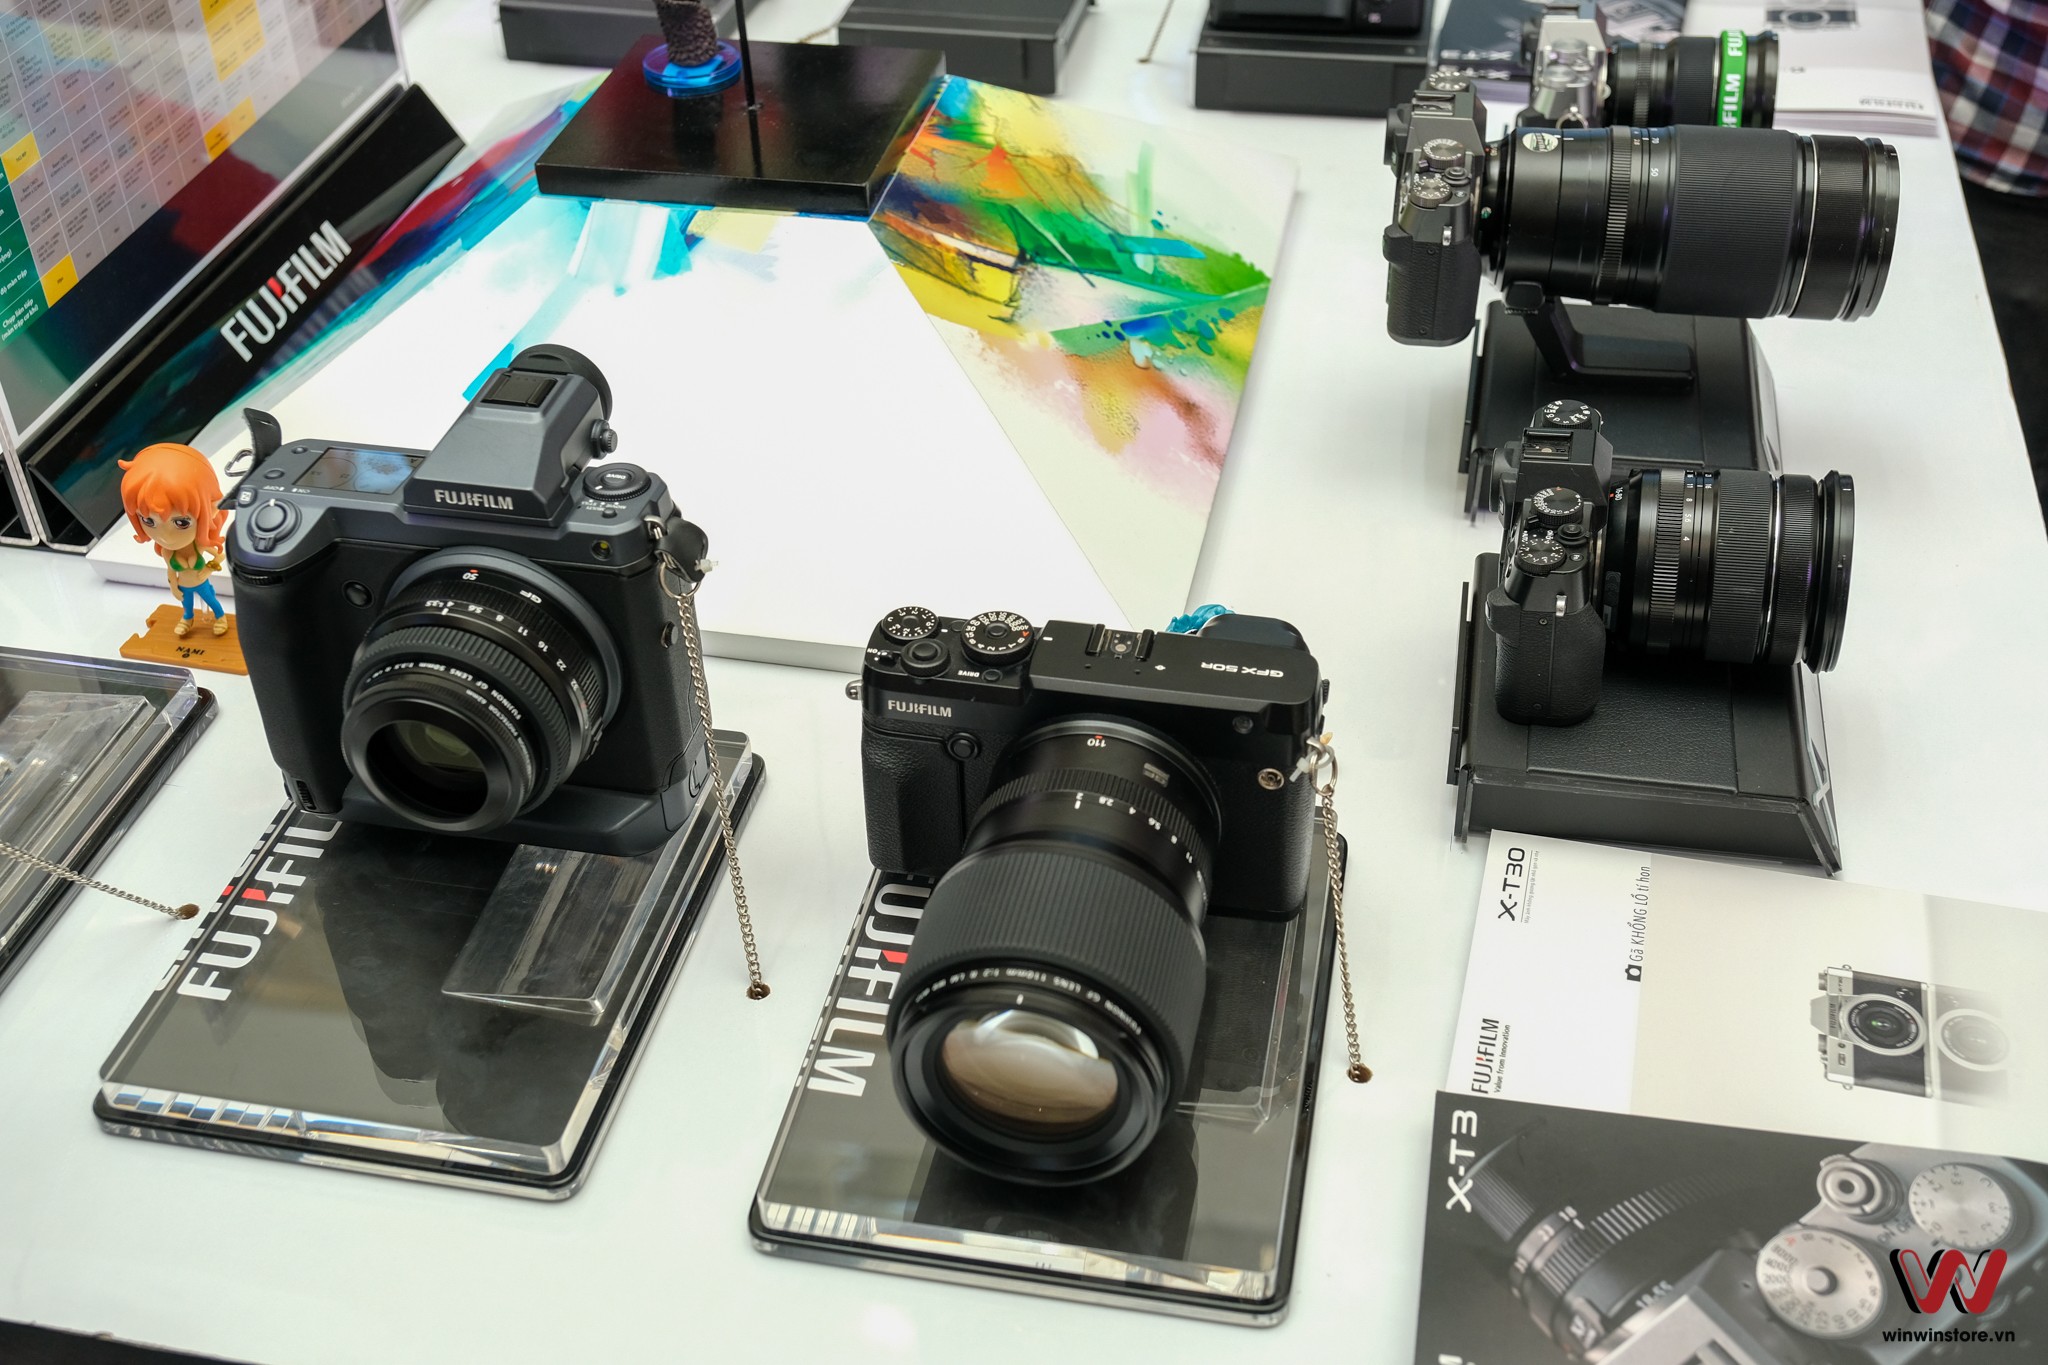 Fujifair 2019: "smart camera" X-A7, Instax mini liplay chính thức